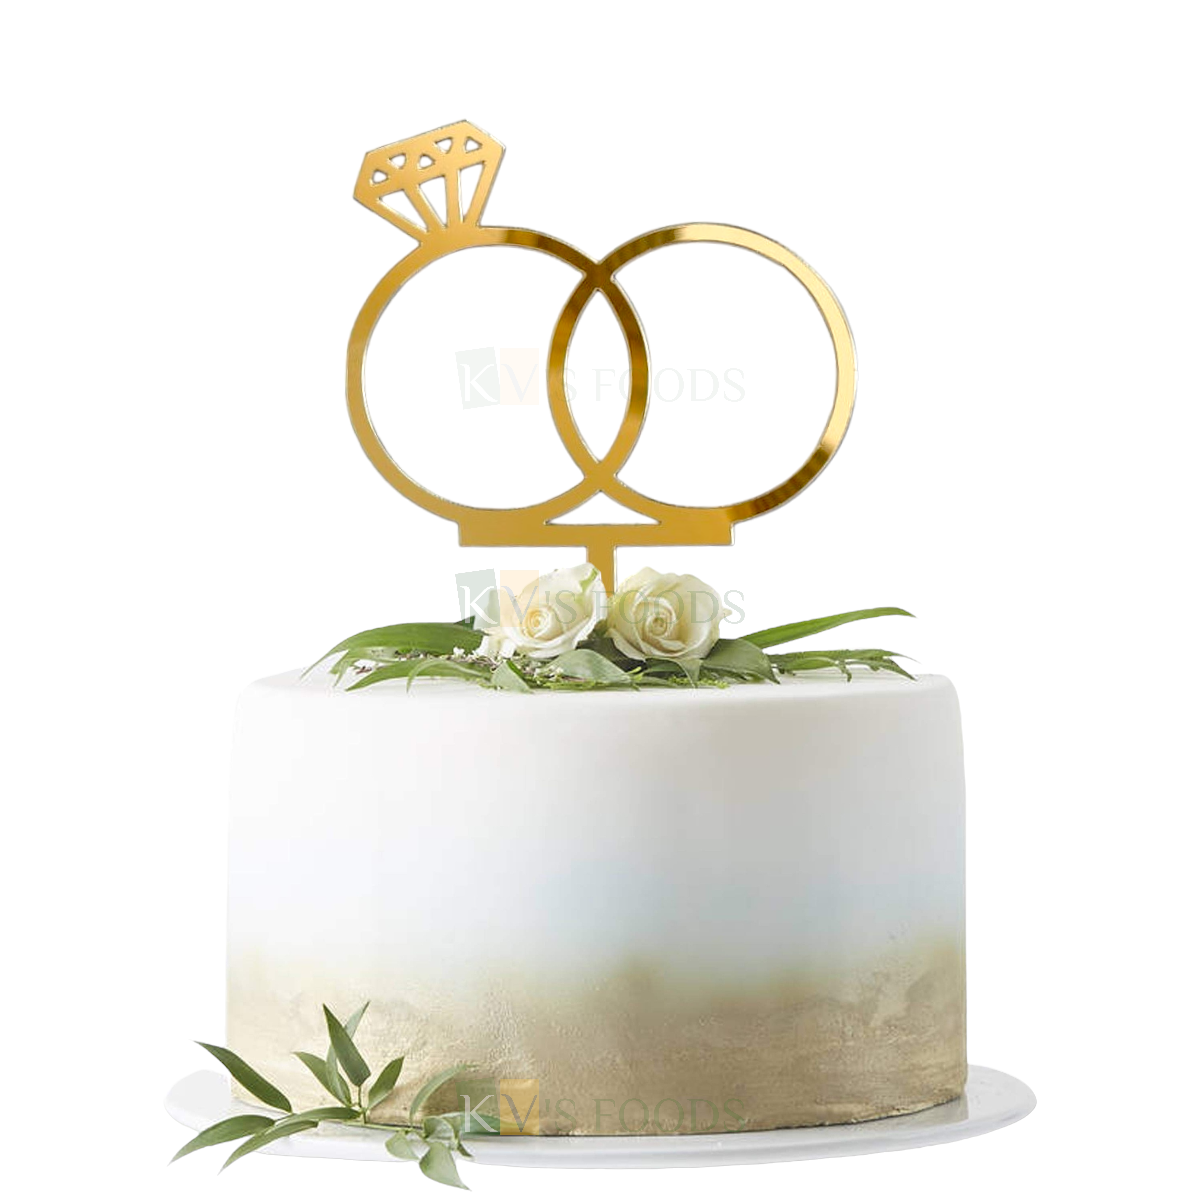 1PC Golden Acrylic Shiny Glass Finish Engagement Ring Cake Topper, Wedding Celebration, Engagement Party, Unique Elegant Font Design Cake and Cupcake Insert, DIY Cake Decorations